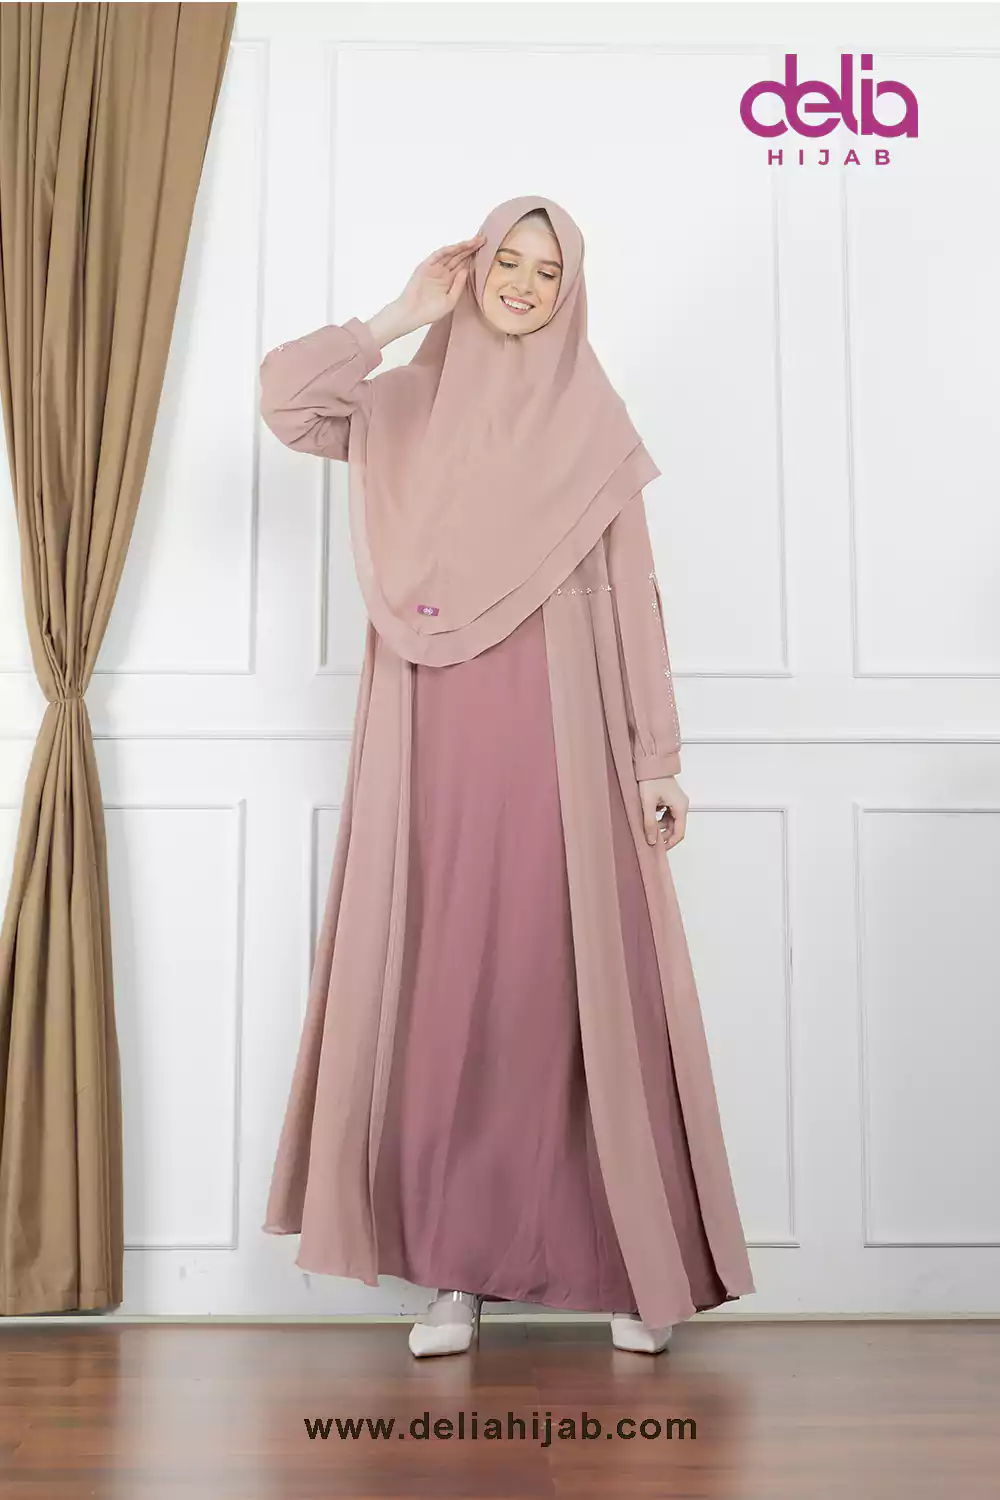 Baju Sarimbit Keluarga Muslim - Gamis Sarimbit Rose Pearl - Delia Hijab